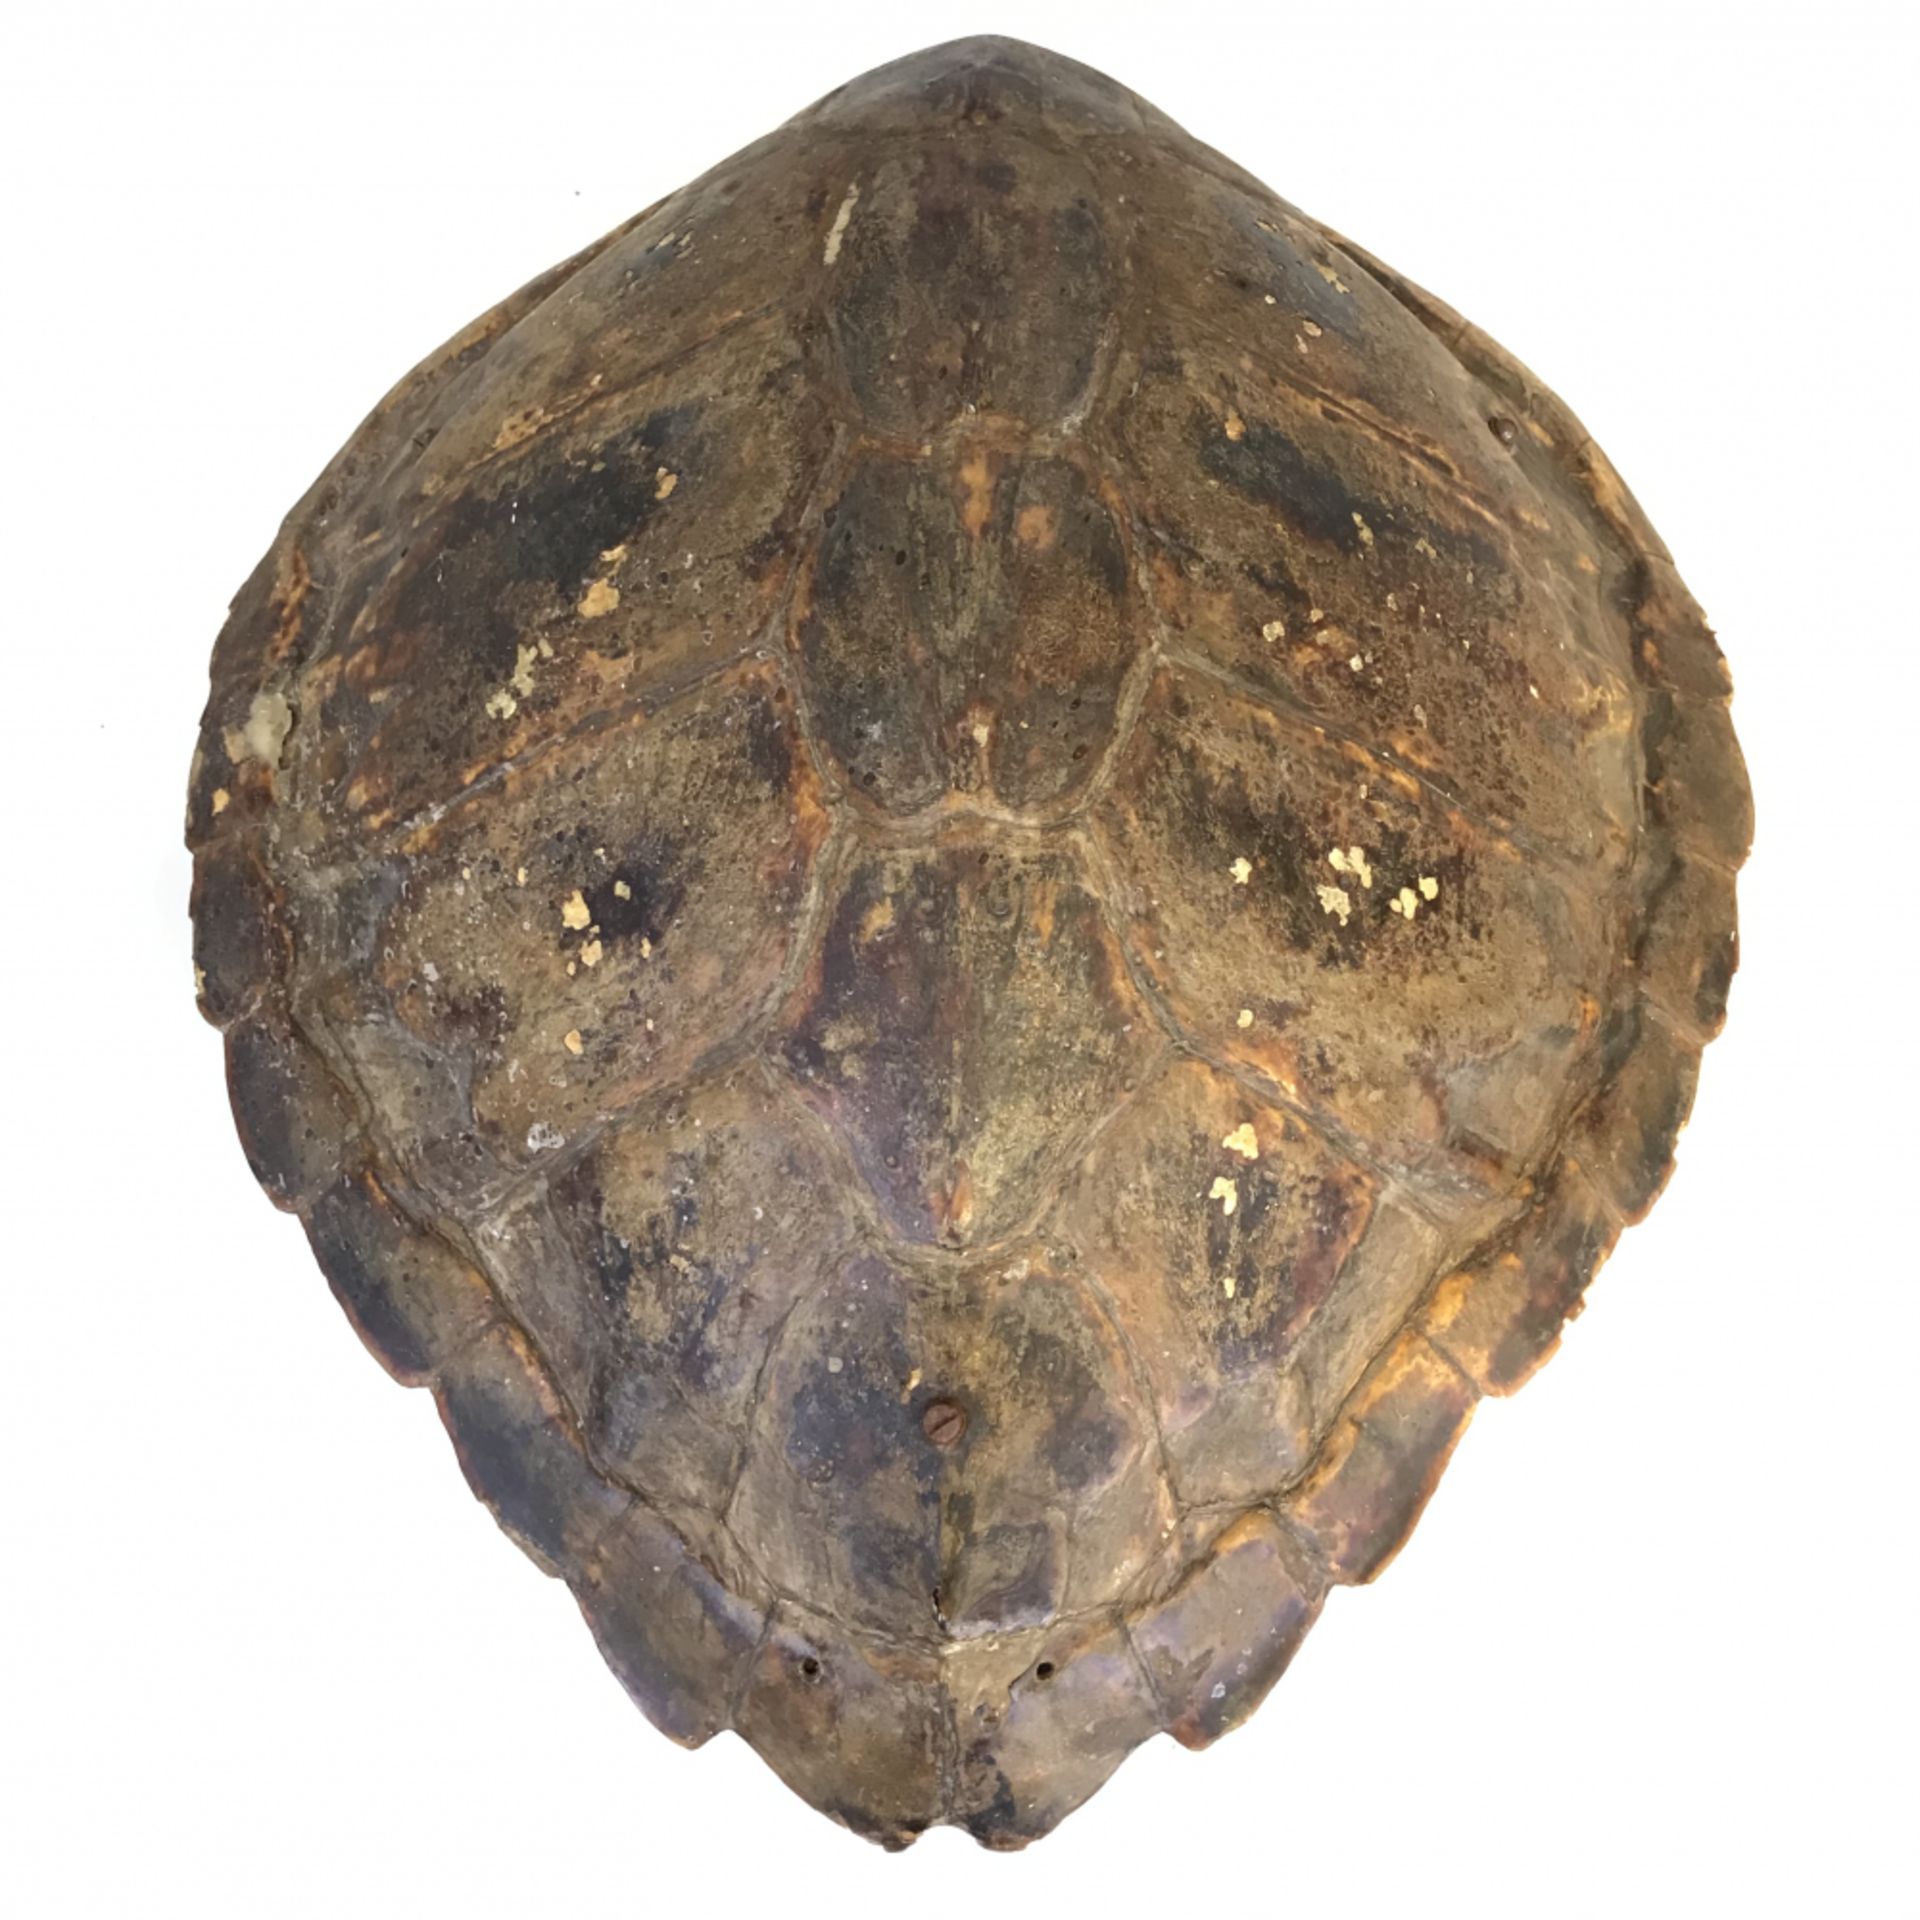 Lampe aus einer Meeresschildkrötenpanzer